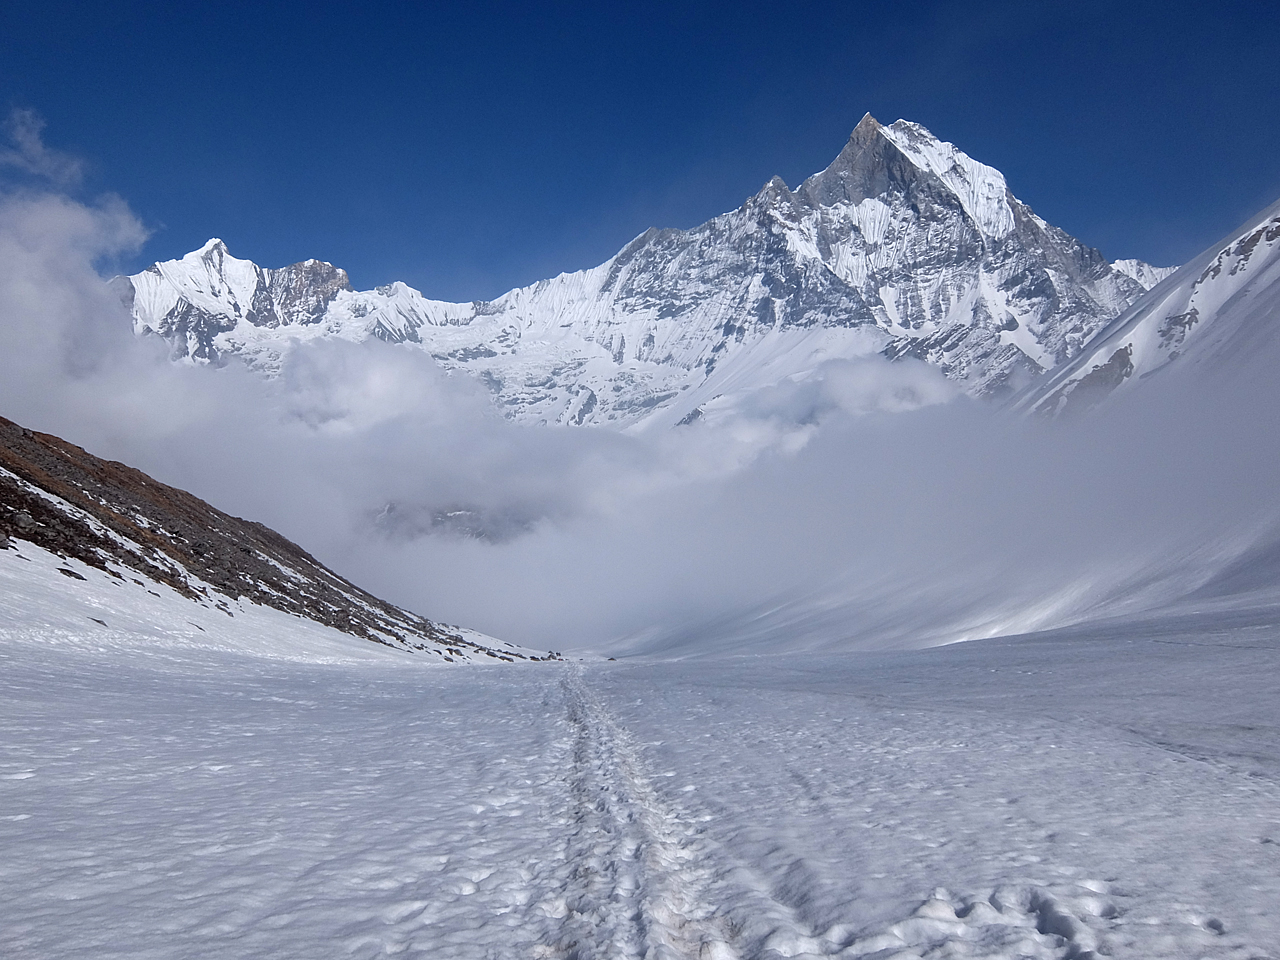  정면에 보이는 것이 '세계 3대 미봉' 중 하나인 마차푸차레(6993m).